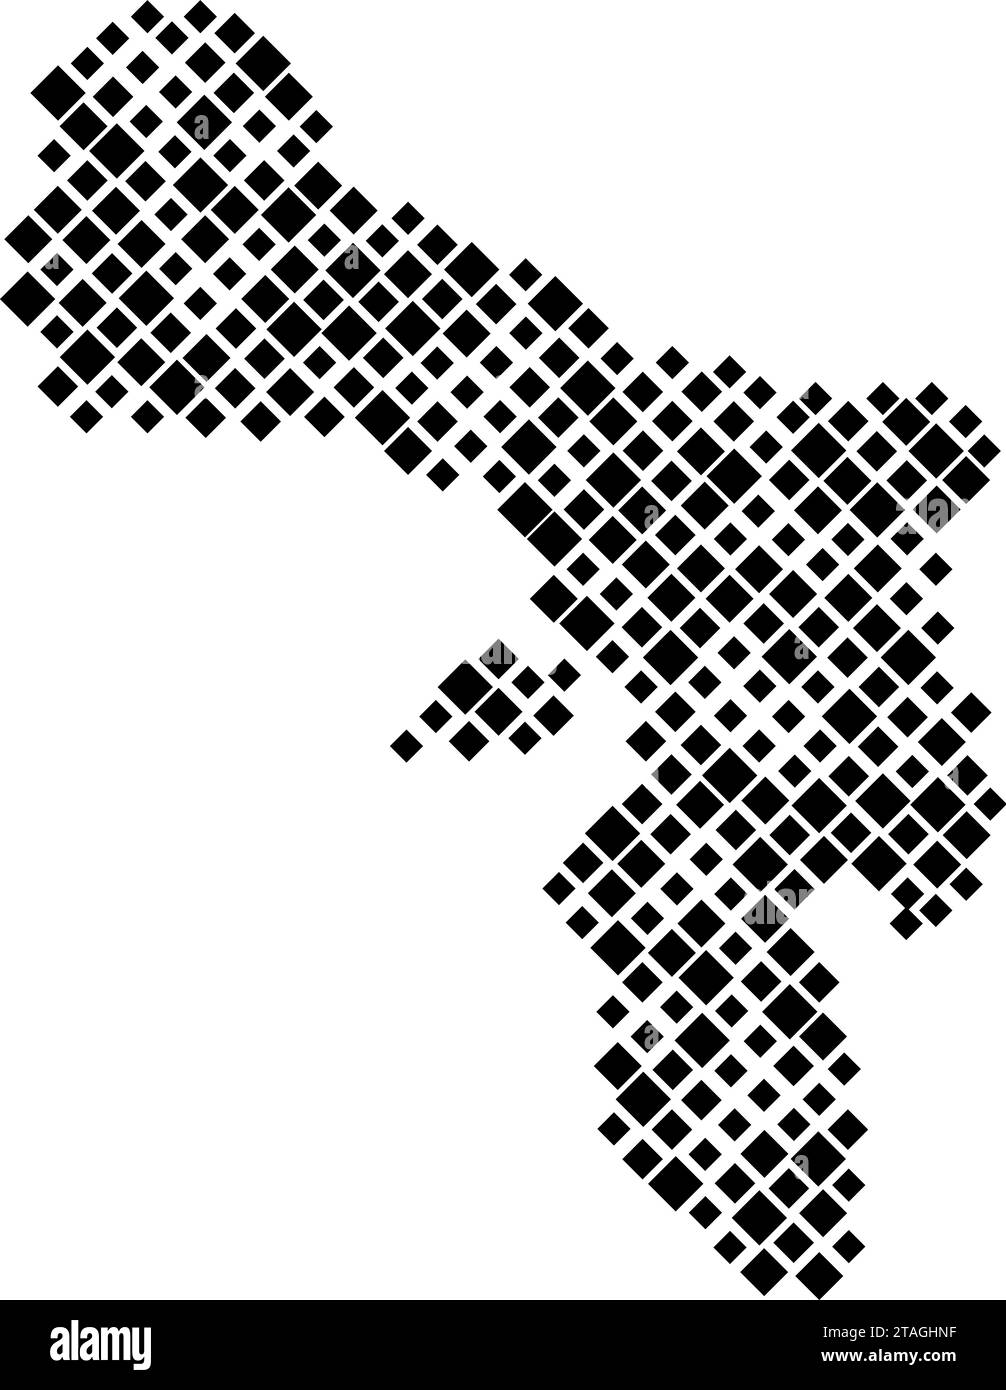 Bonaire-Karte aus Muster von schwarzen Rauten unterschiedlicher Größe. Vektorabbildung. Stock Vektor